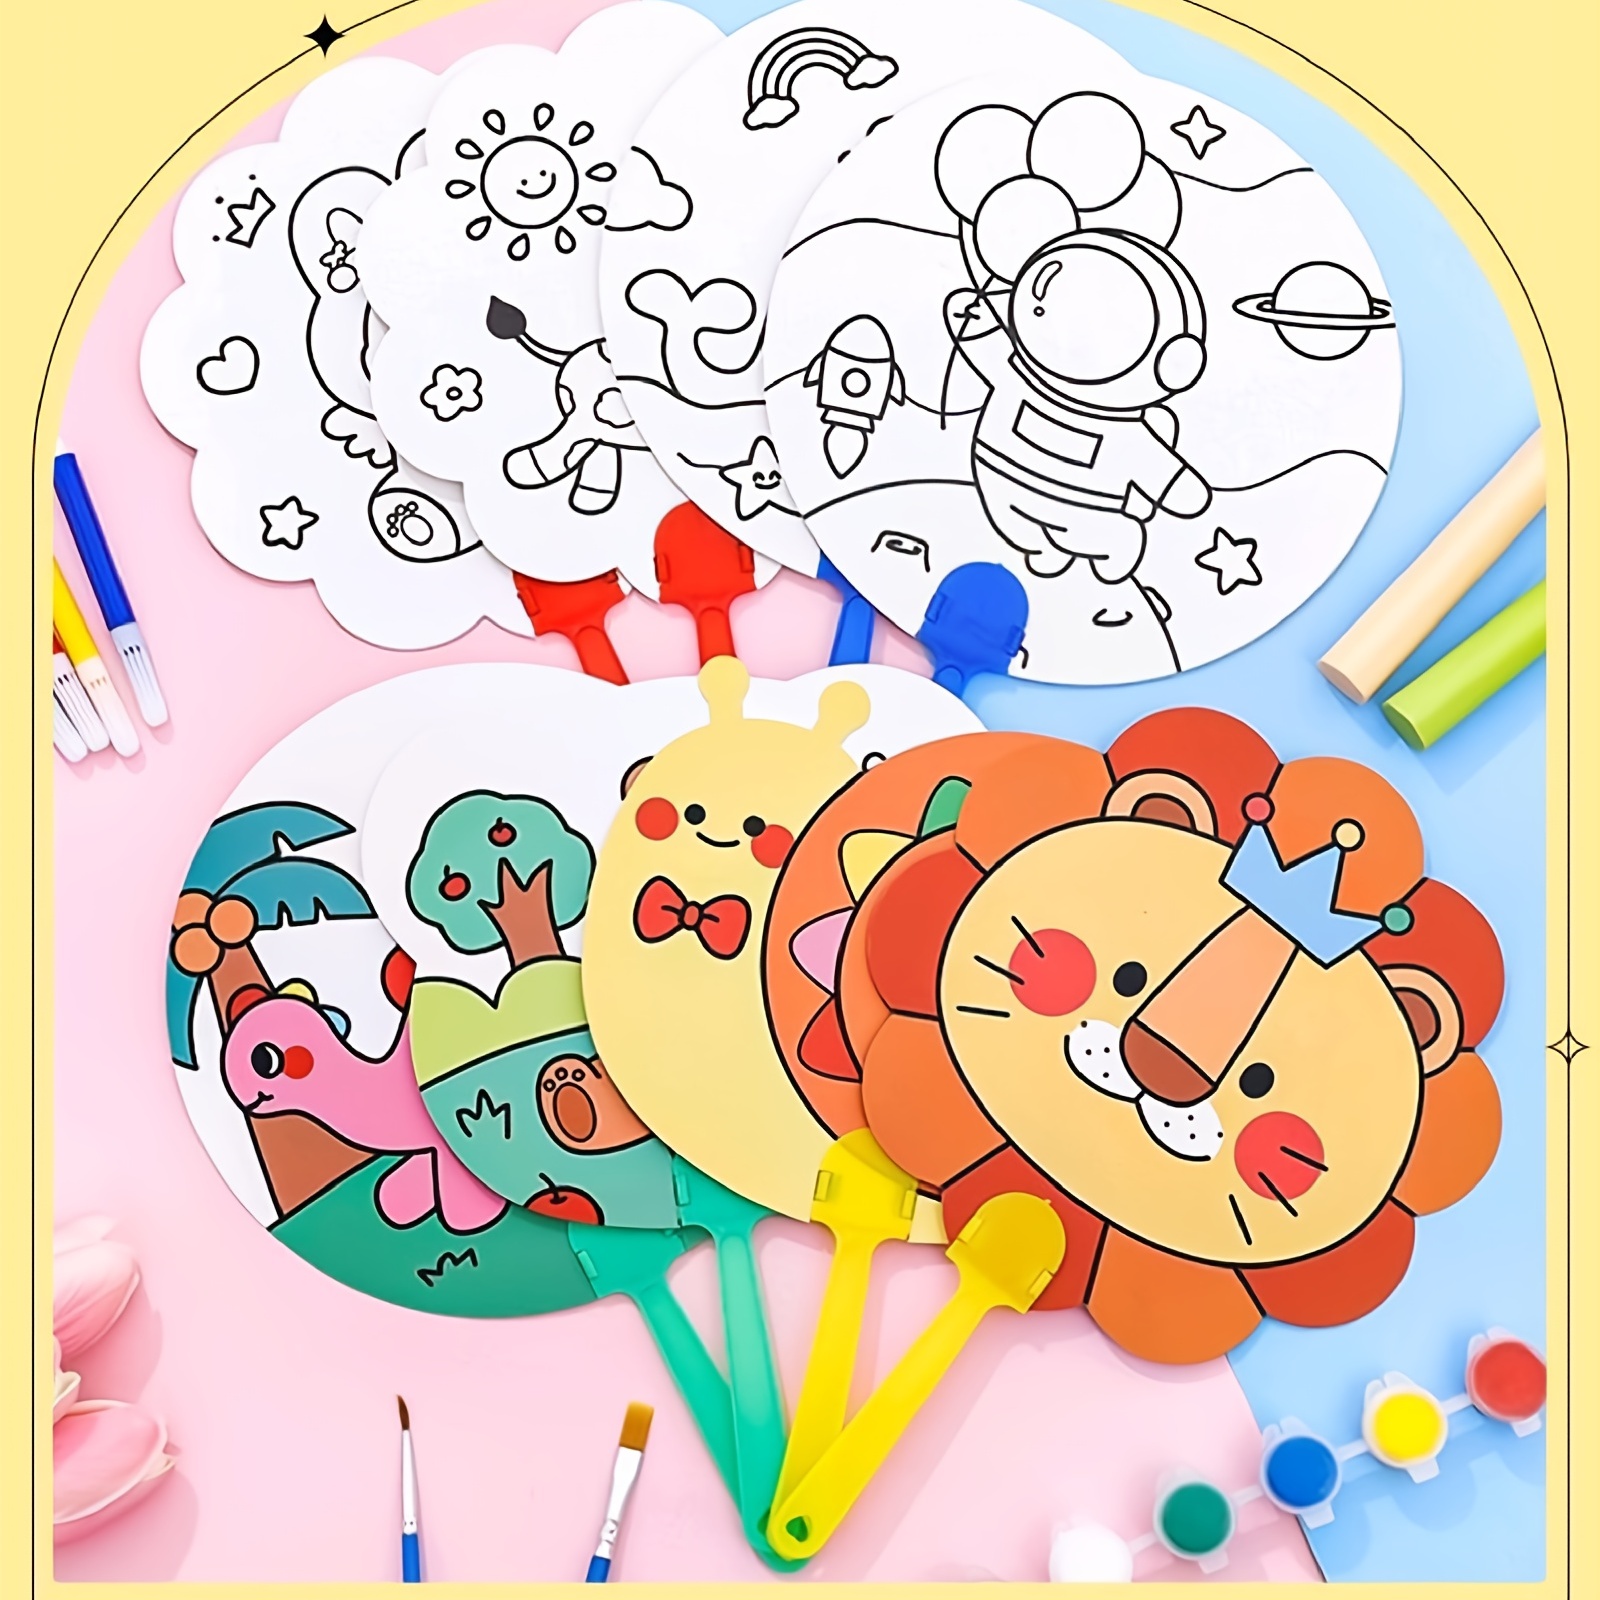 Pintura Dos Desenhos Animados, Ovos De Doodle, criança, pintado